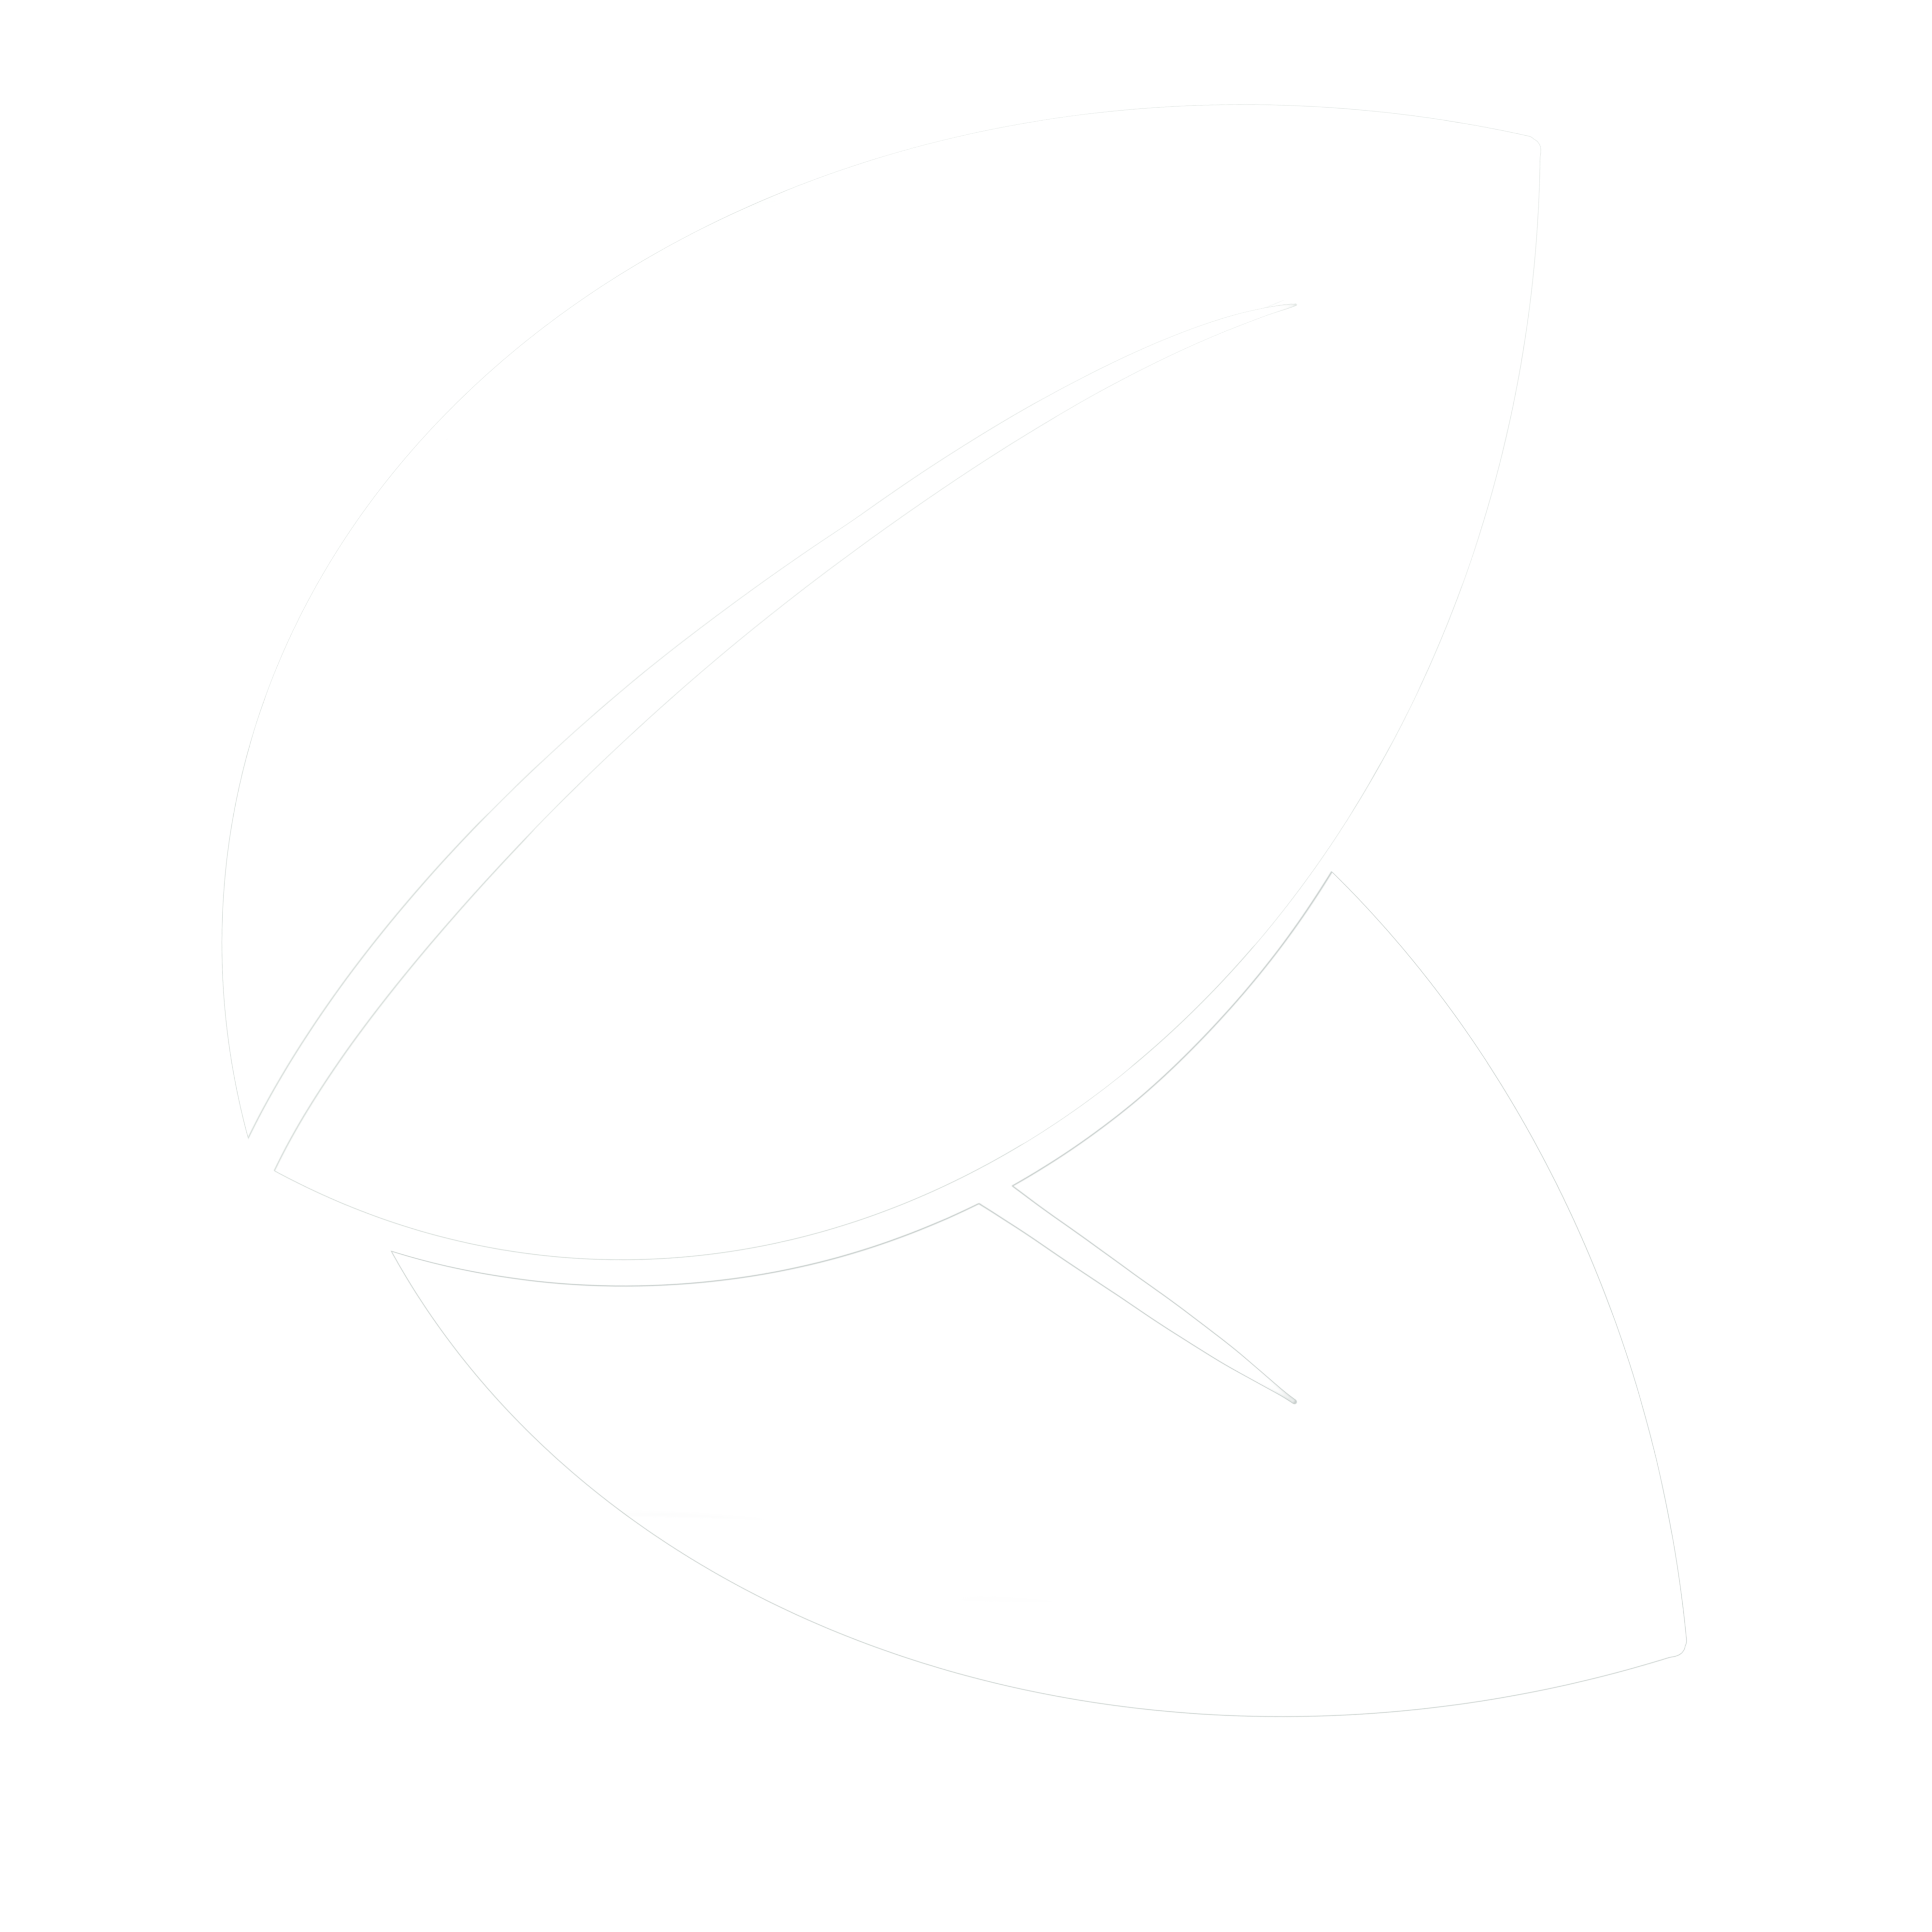 btree logo